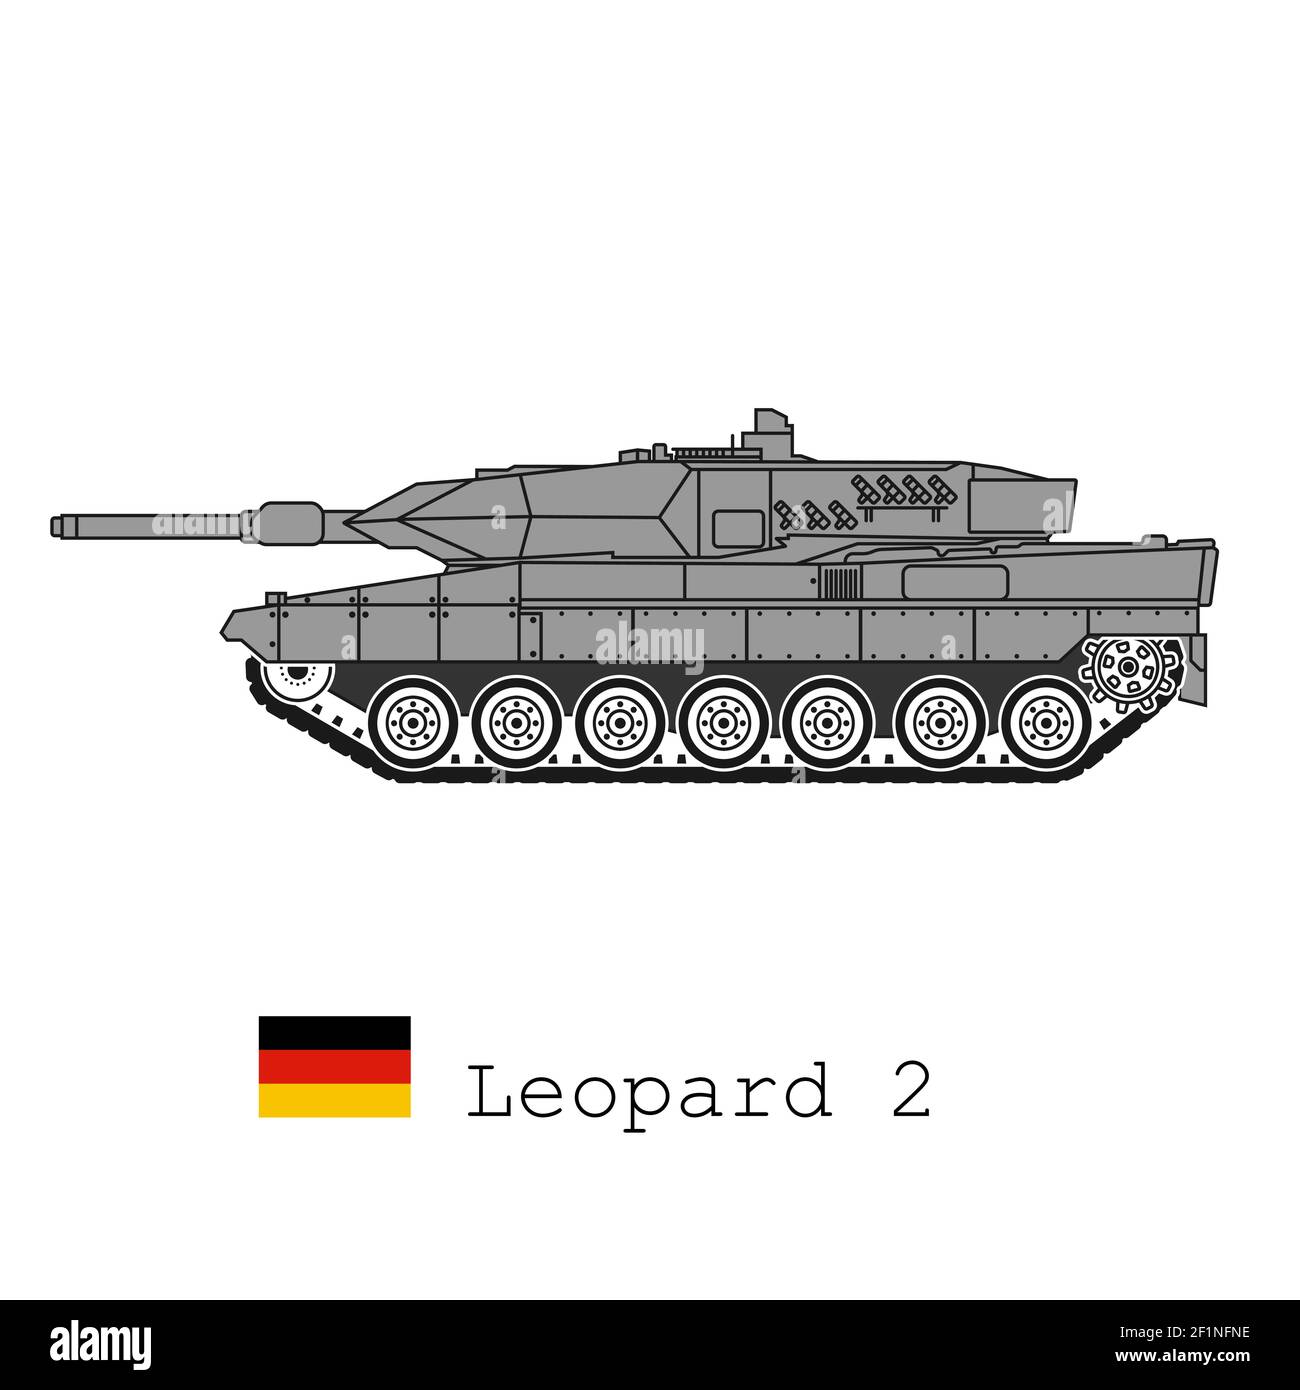 Realistische Vektor-Ikone des Hauptkampfpanzers der Bundeswehr Leopard 2. Seitenansicht. Stock Vektor